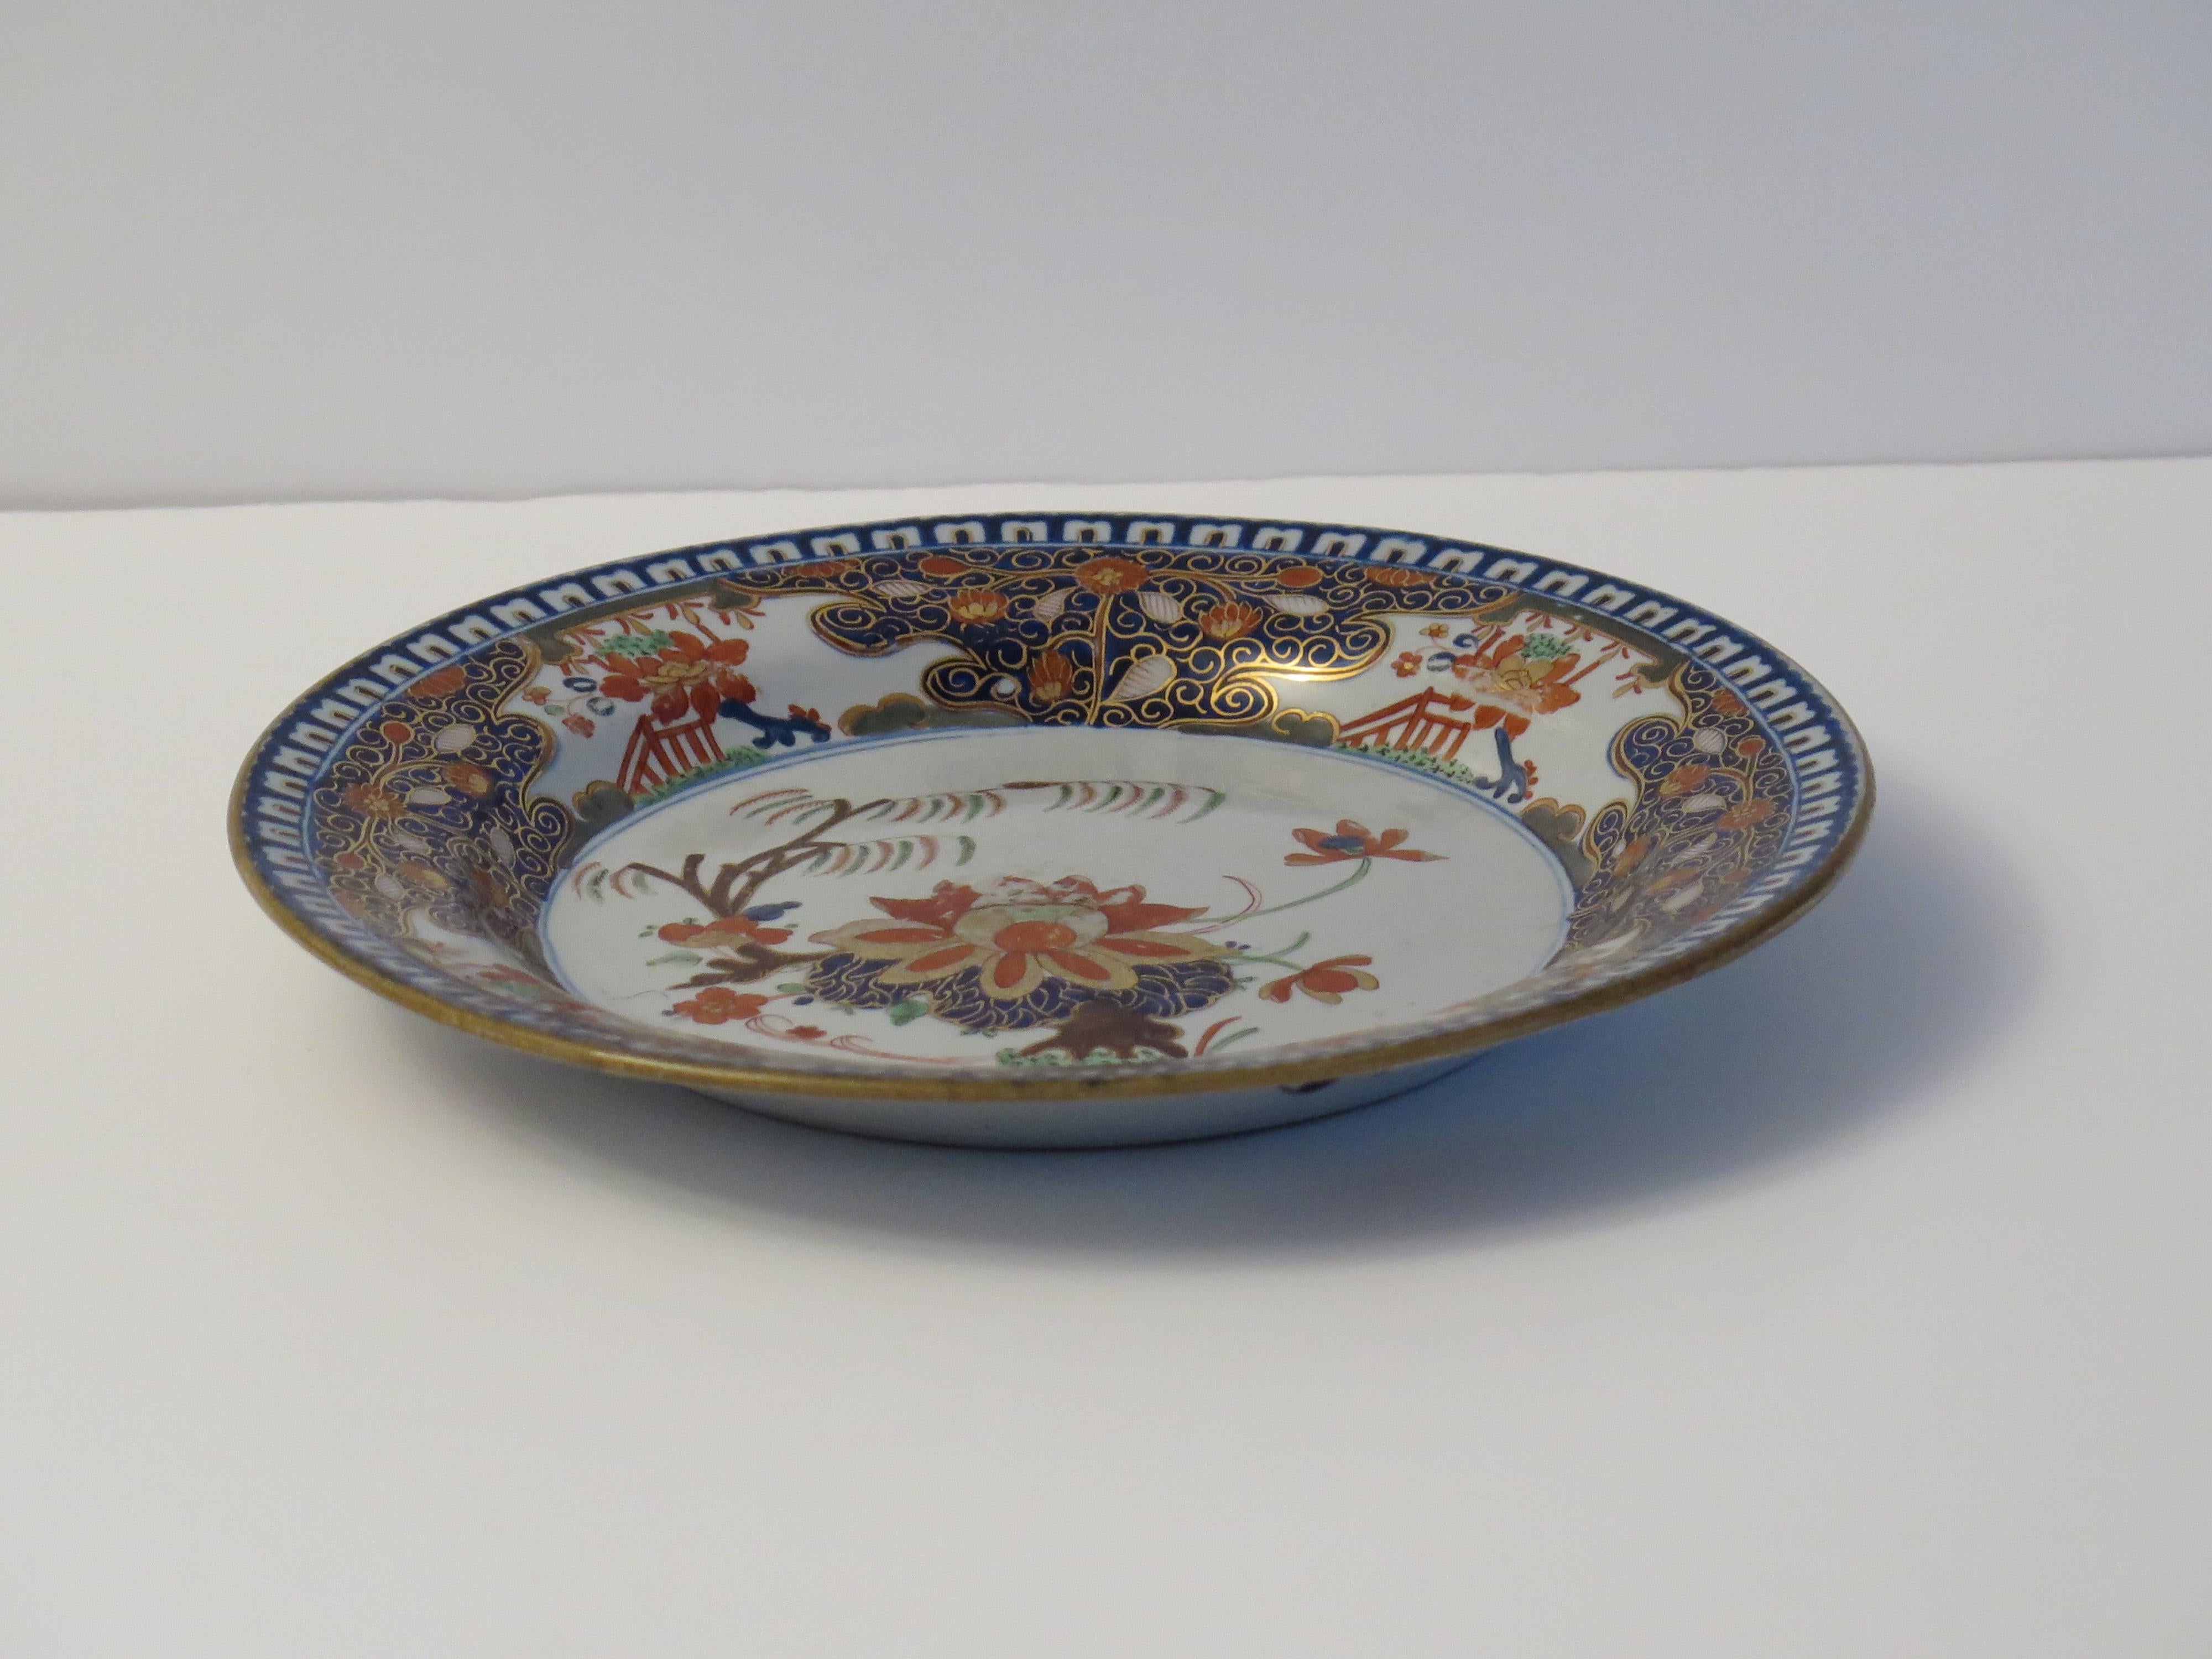 Il s'agit d'une assiette ou d'un plat en pierre de Chine (Ironstone) finement peint à la main, fabriqué par John Turner de Lane End, Staffordshire, au tout début du 19e siècle, vers 1800 à 1806.

La pièce est bien empotée et peut servir de plat à